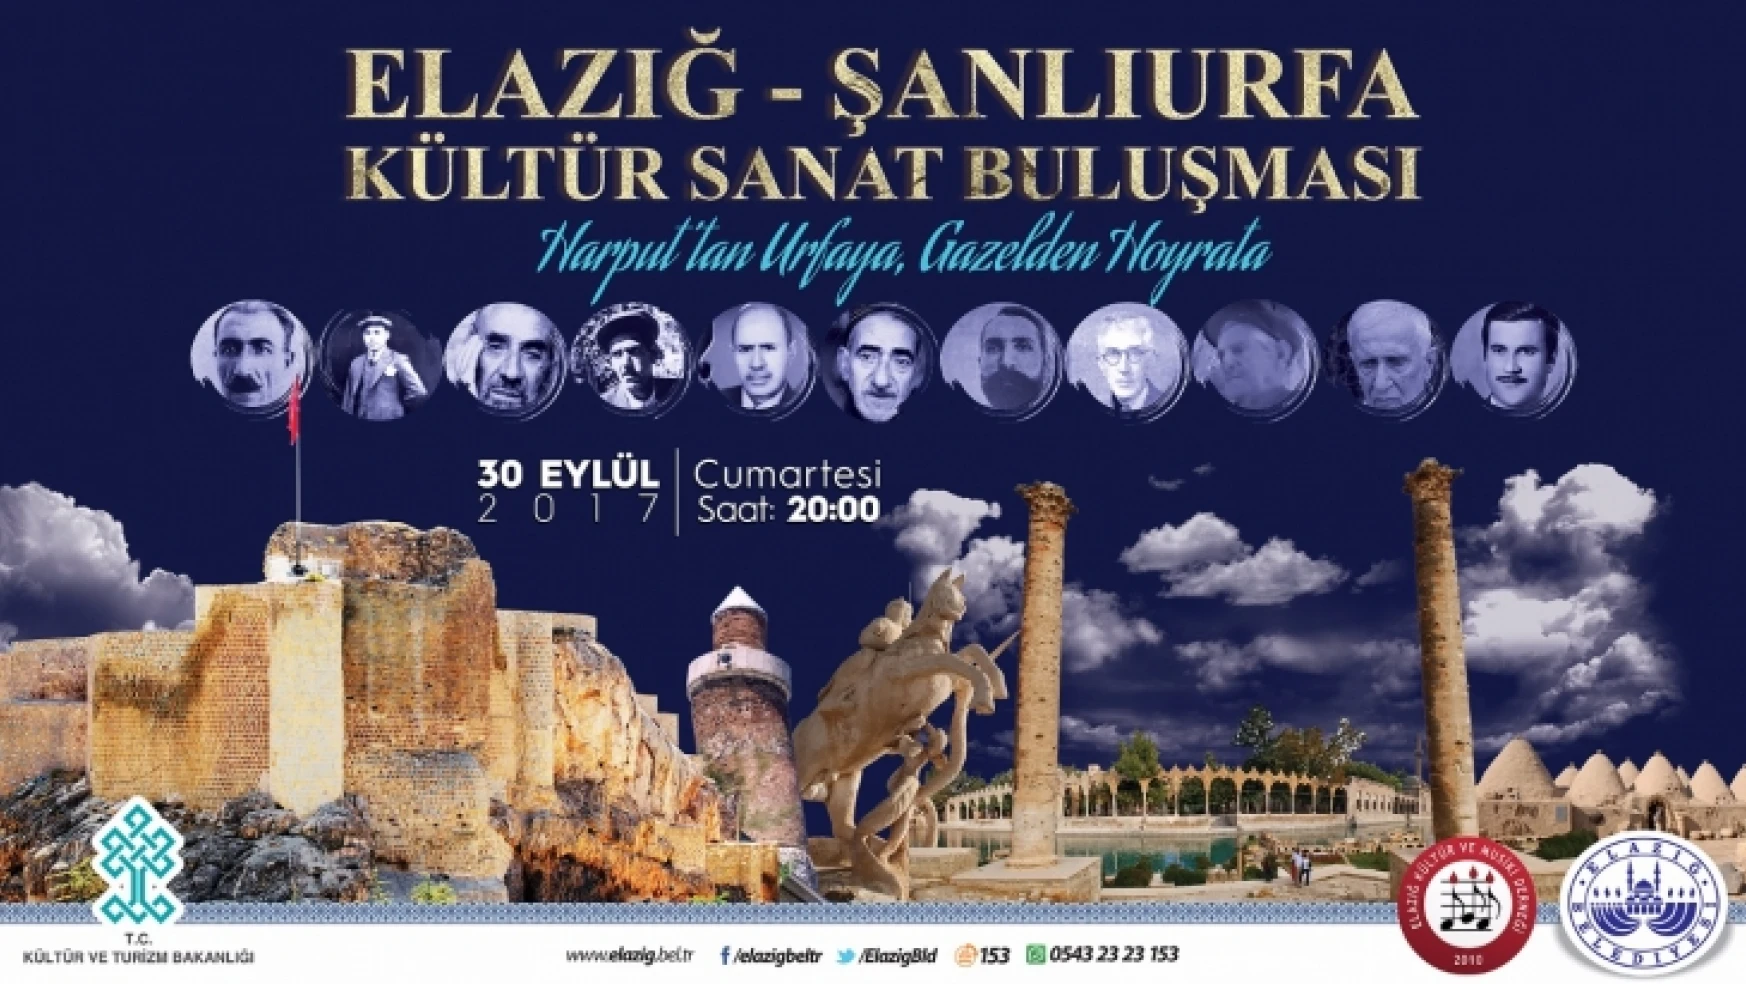 Elazığ-Şanlıurfa Kültür Sanat Buluşması